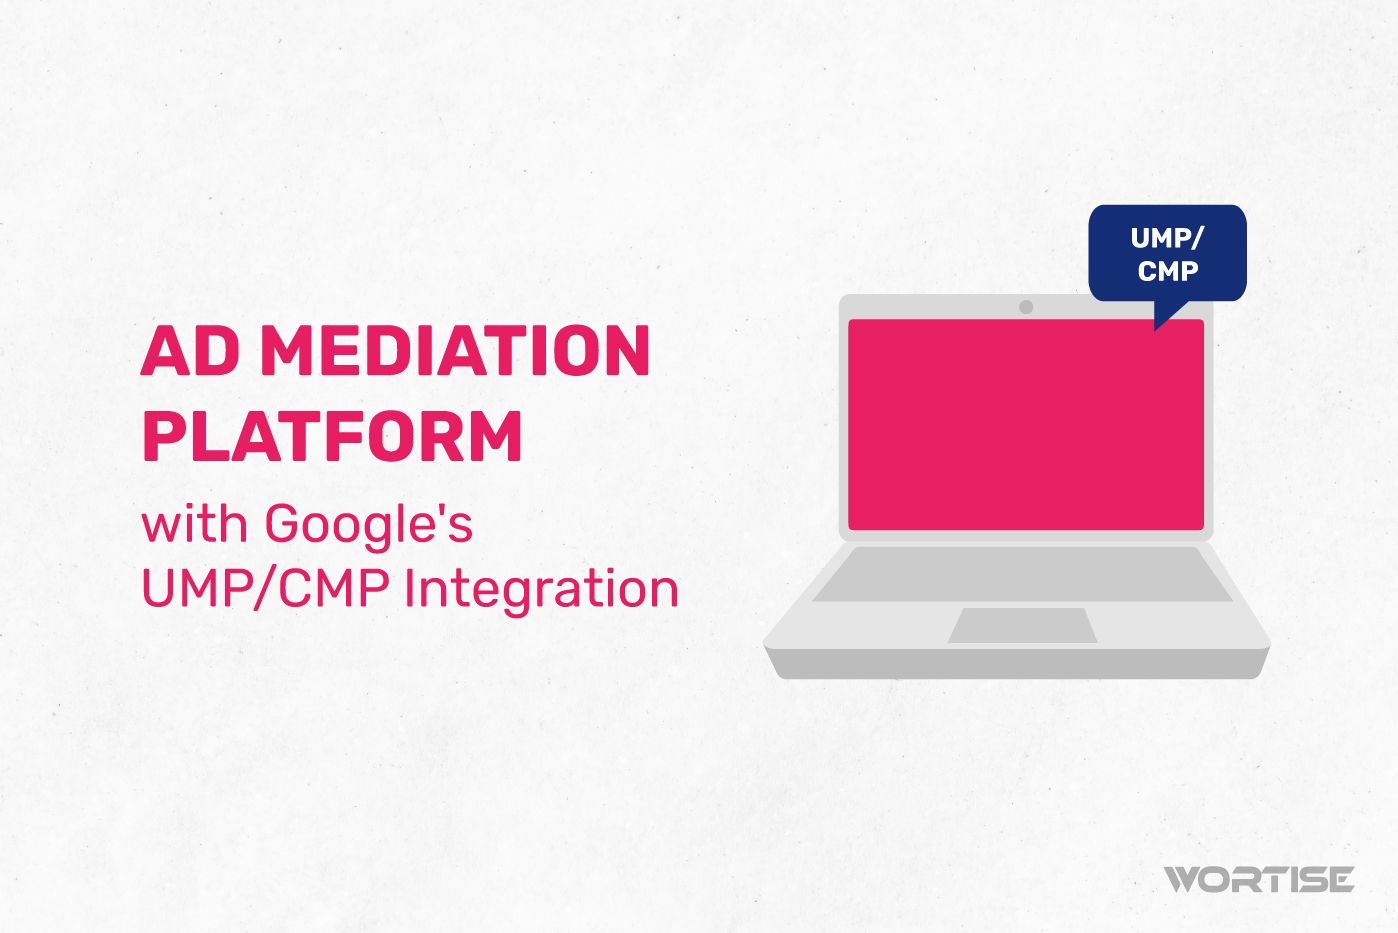 #1 Ad Mediation Platform with Google's UMP/CMP Integration